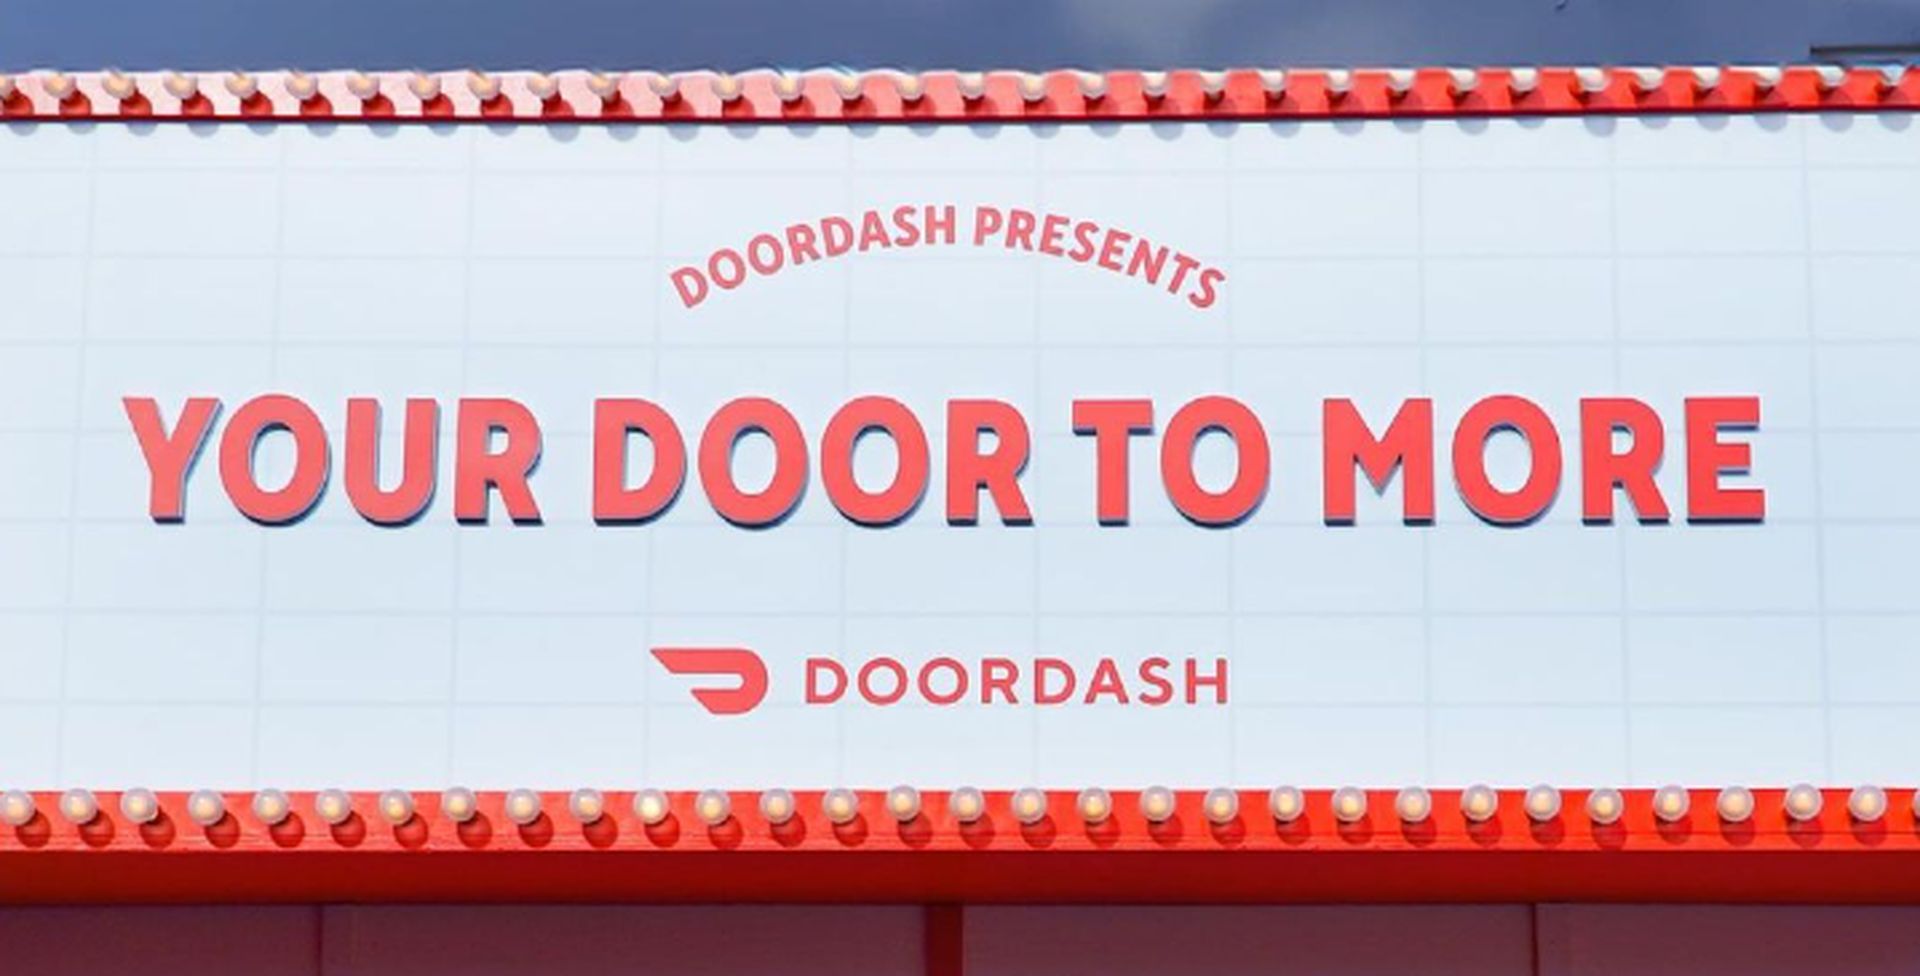 Le code promo DoorDash ne fonctionne pas : comment y remédier ?